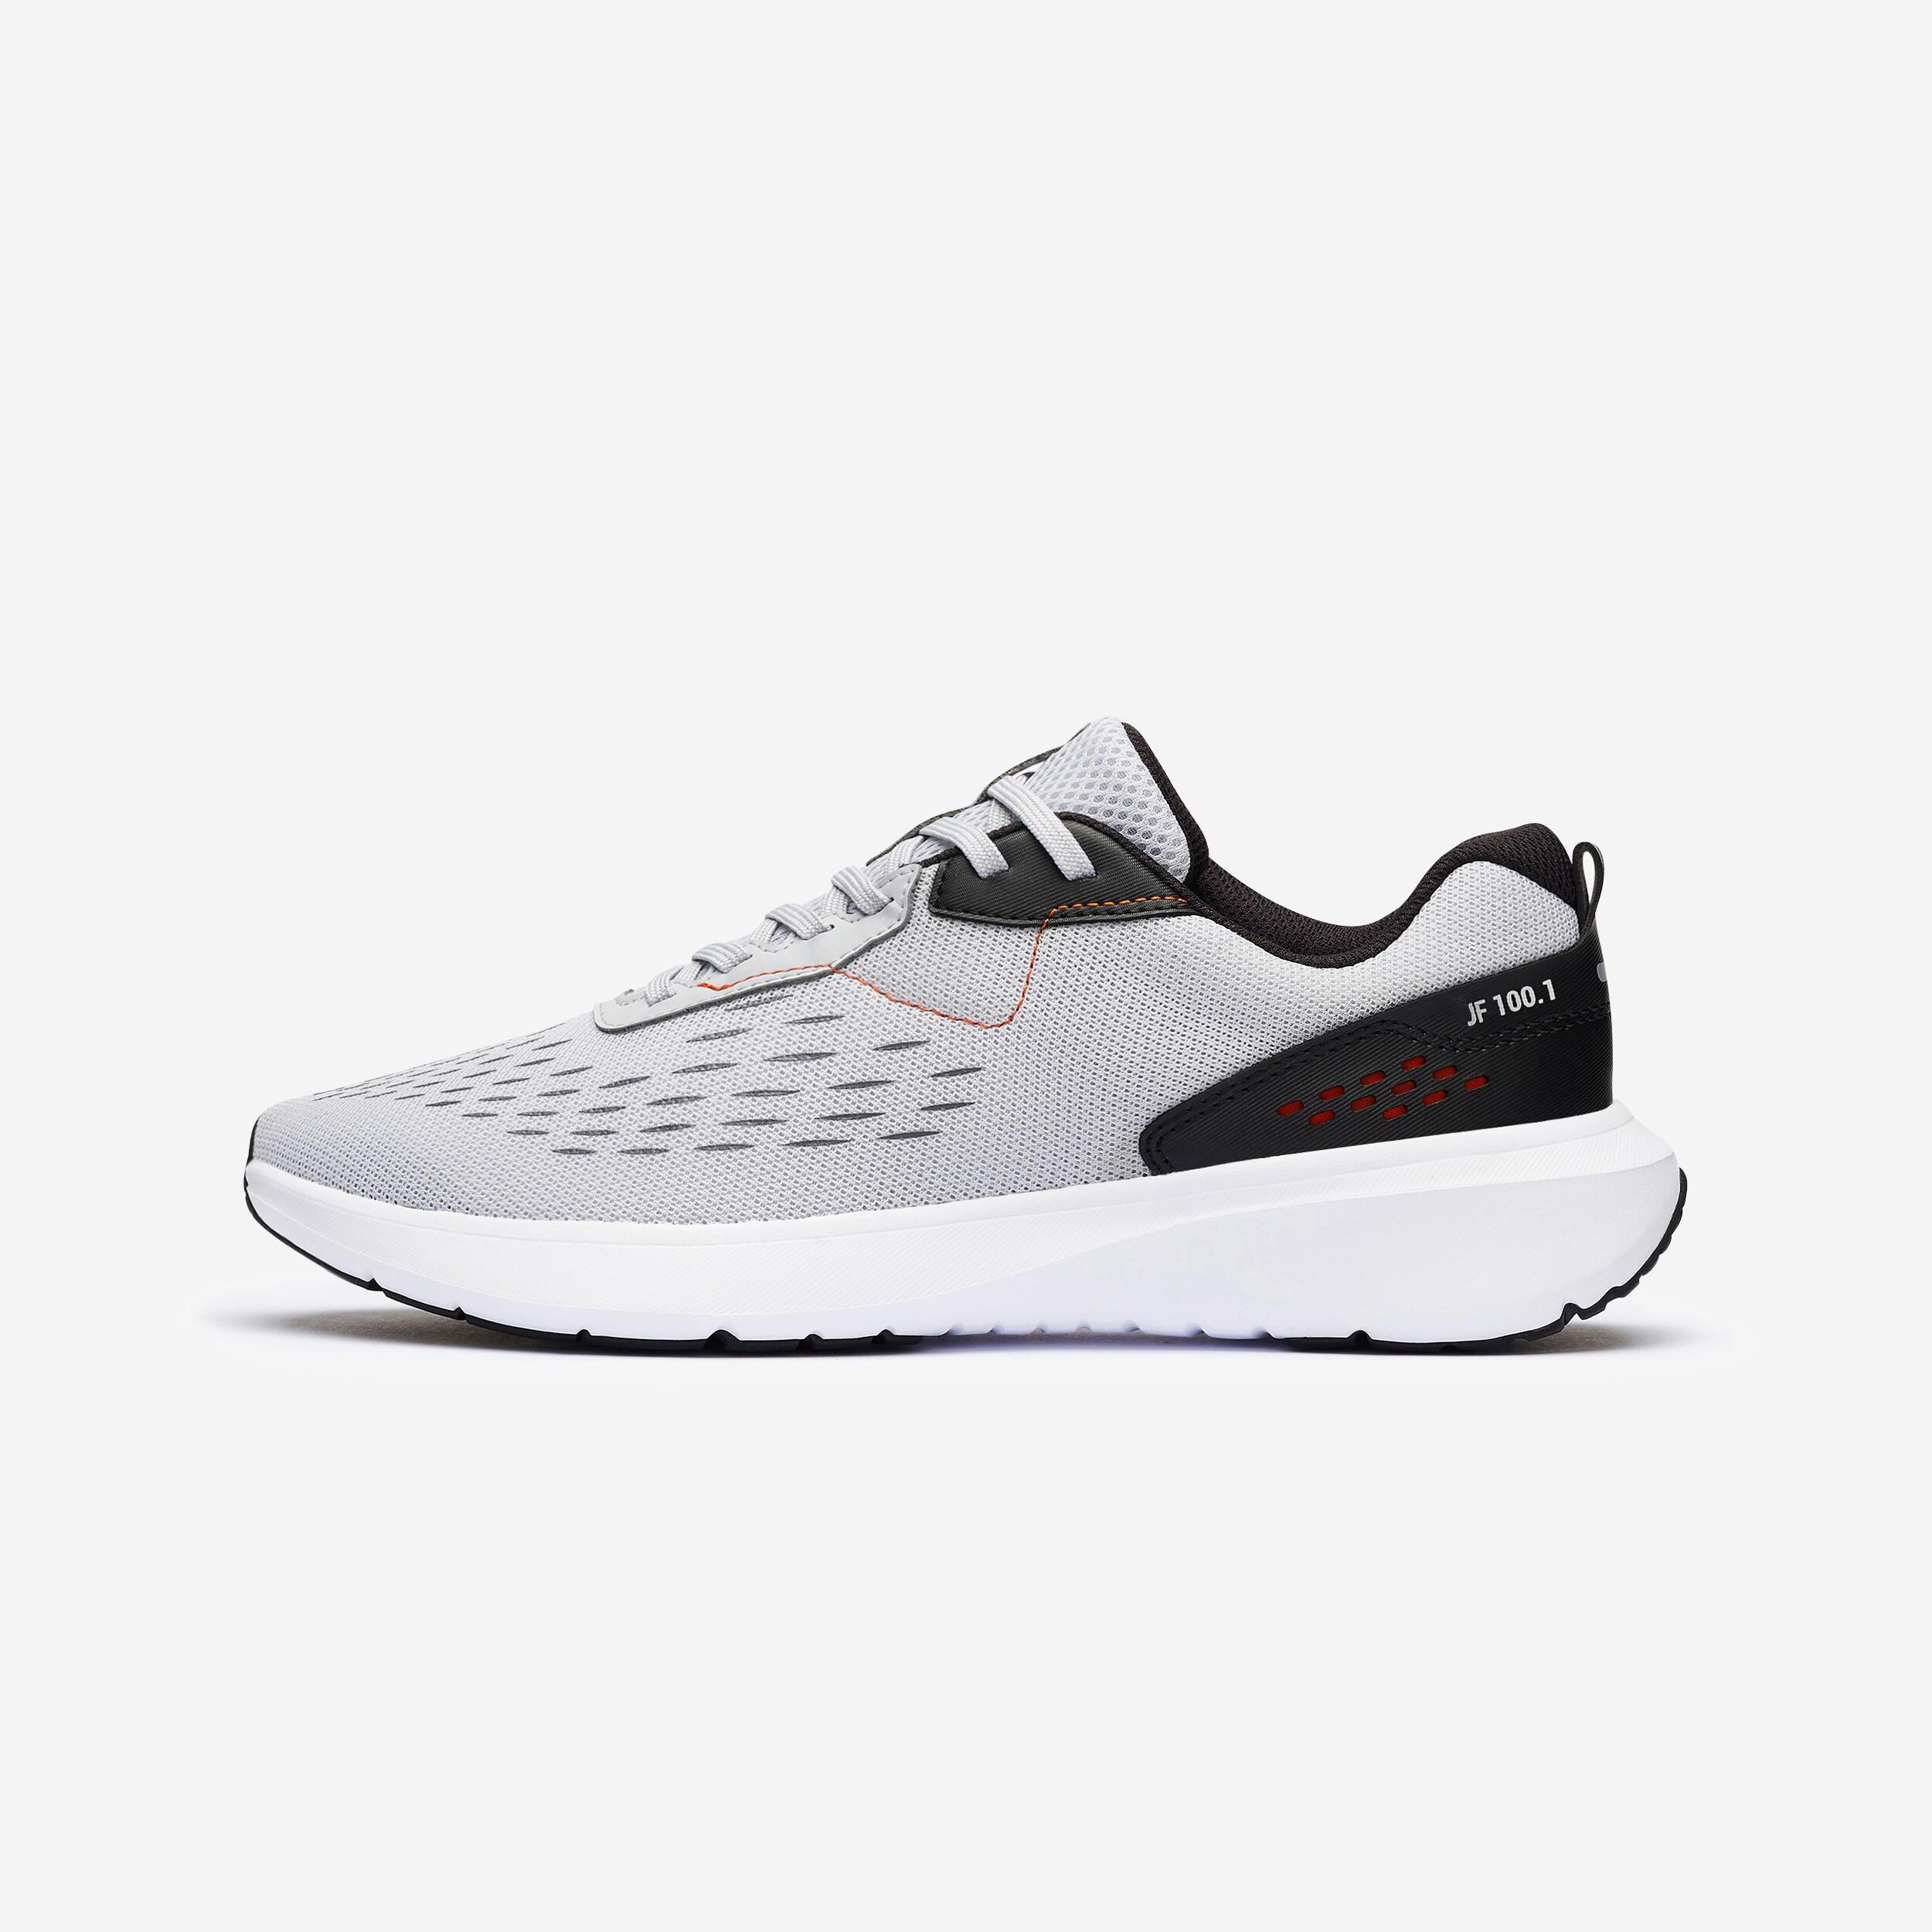 Men’s Running Shoes - Jogflow 100.1 Grey/Orange